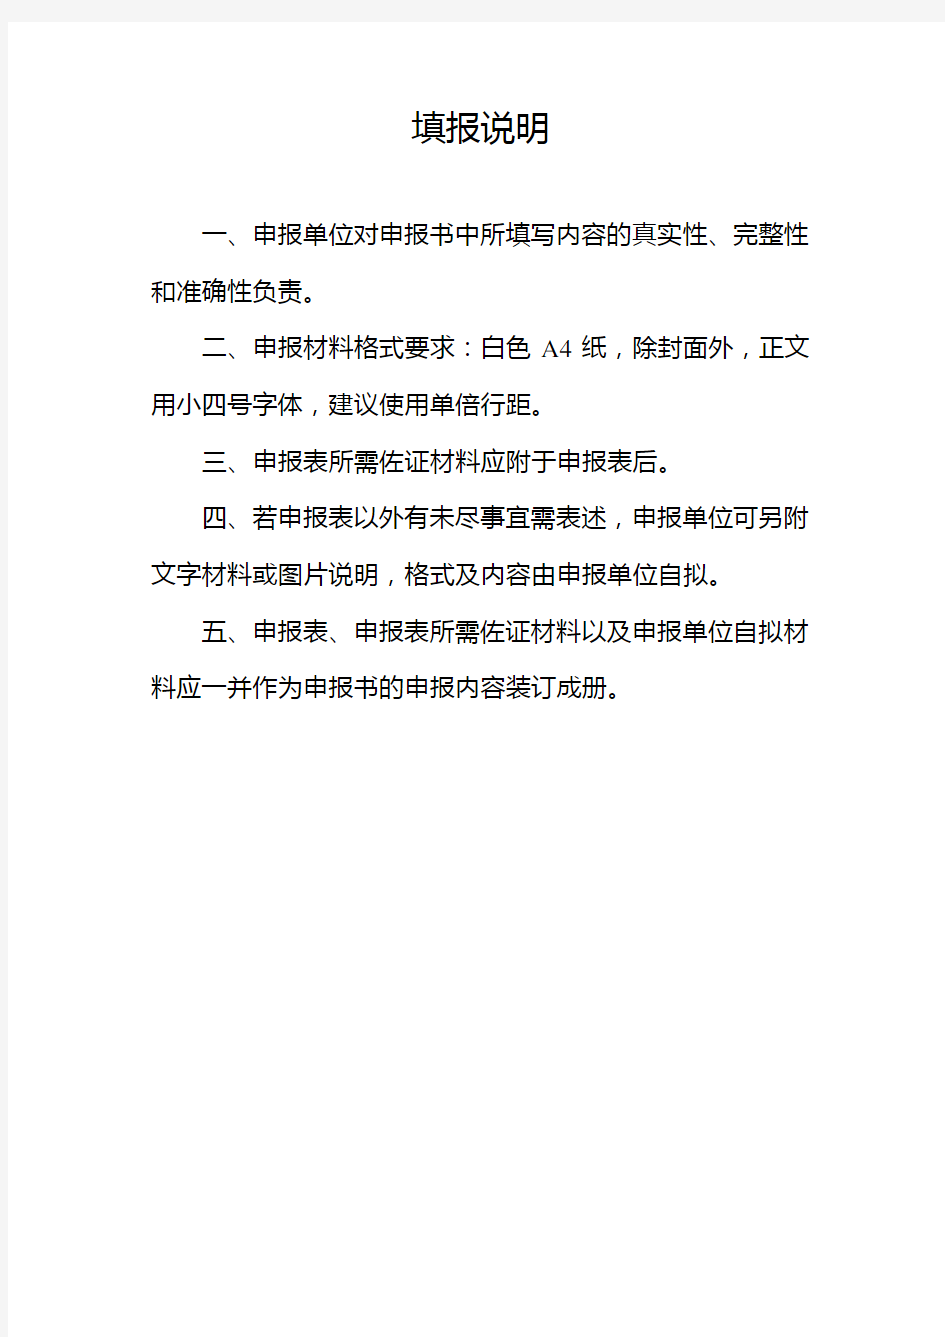 重庆市2020年十大互联网平台申报书填报说明【模板】